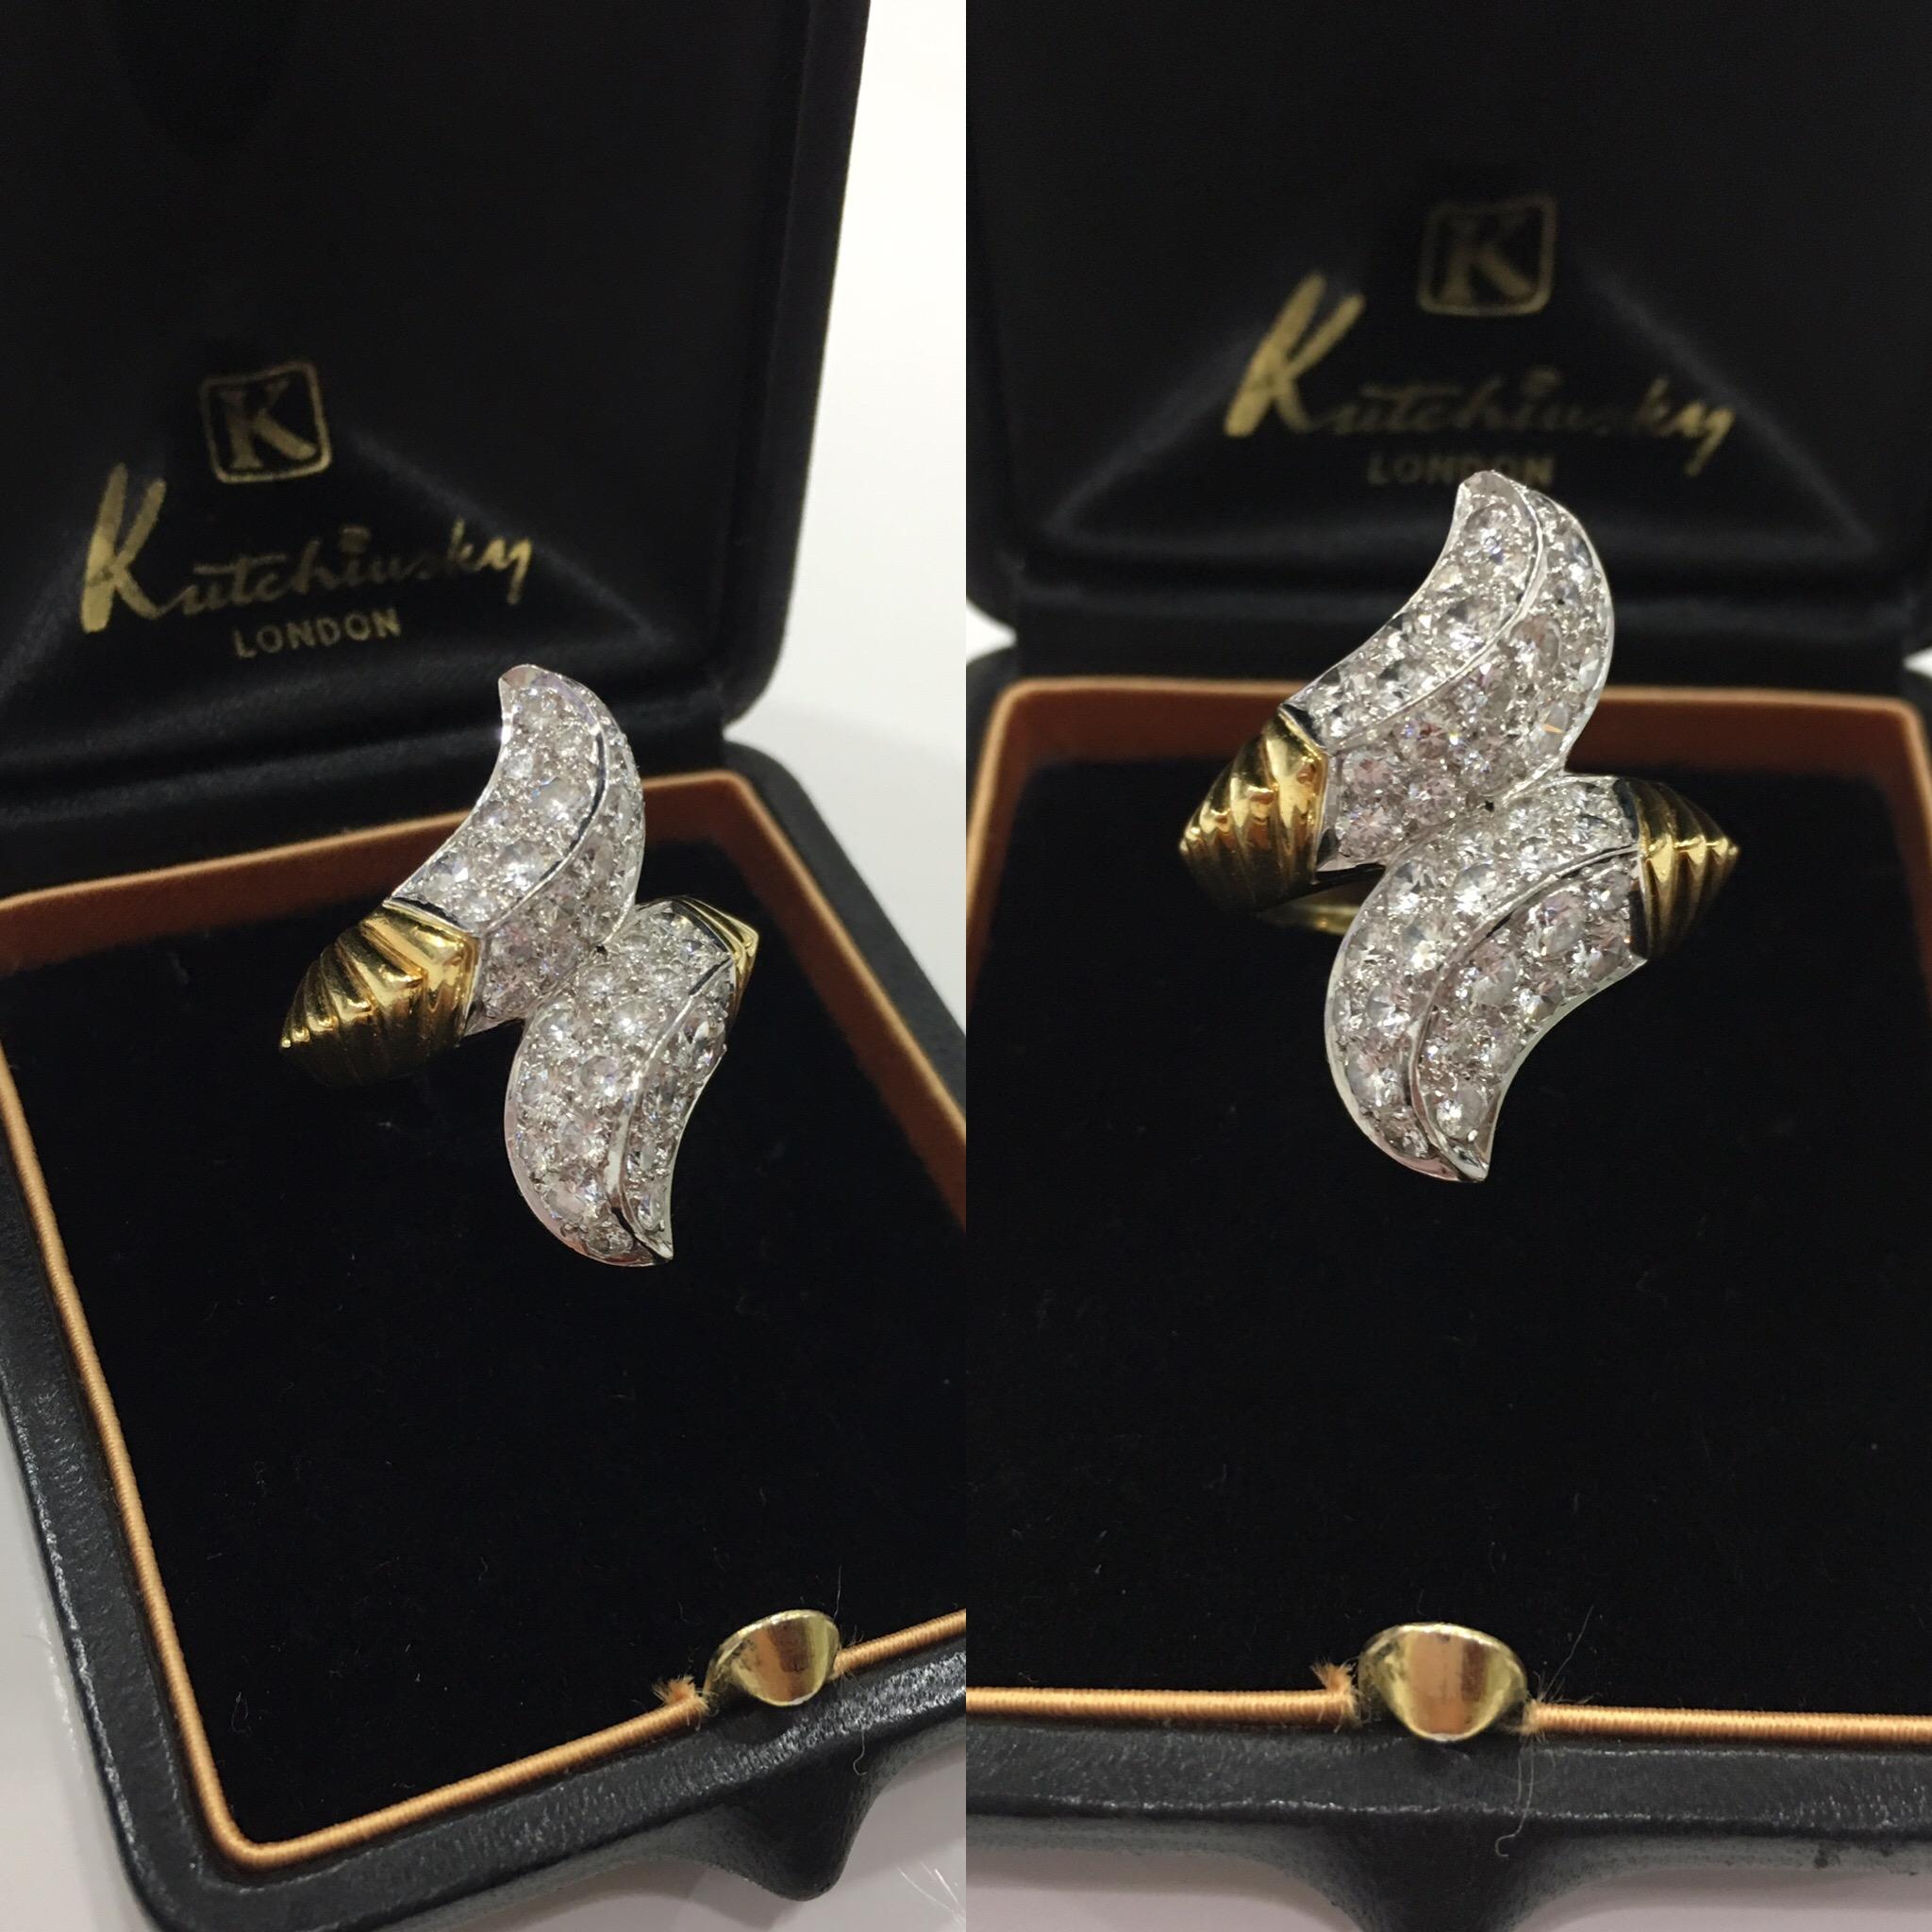 Kutchinsky Diamond Ring, Hallmarked 1990 2